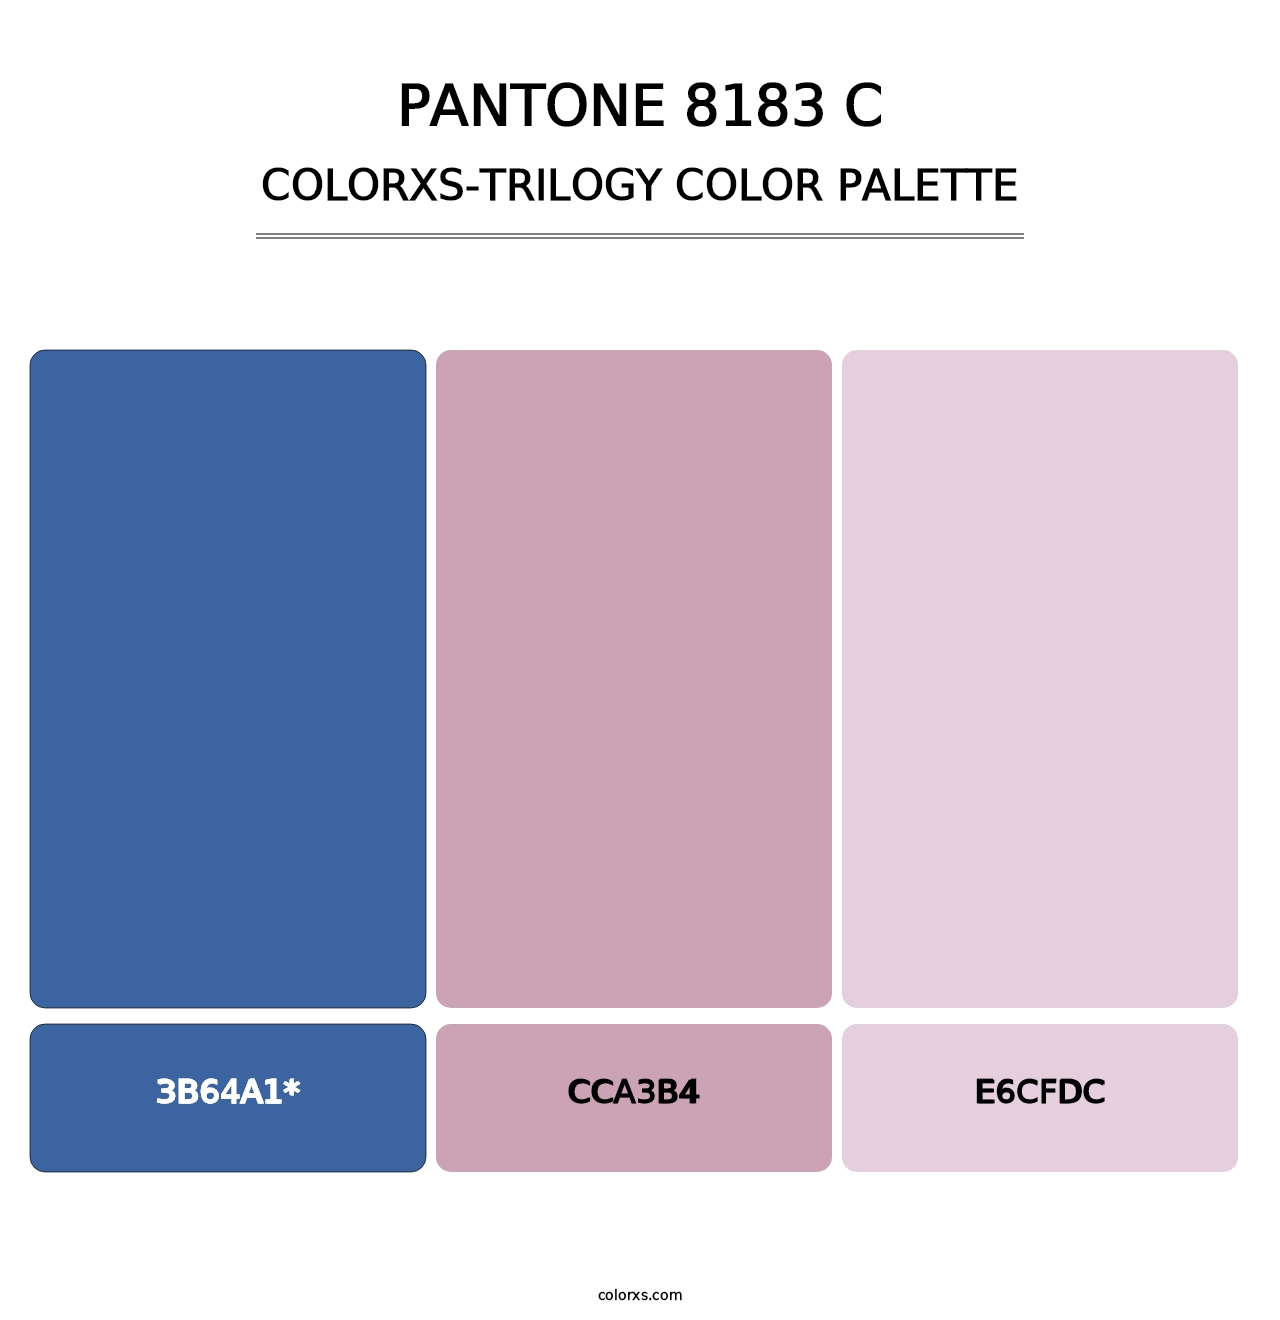 PANTONE 8183 C - Colorxs Trilogy Palette